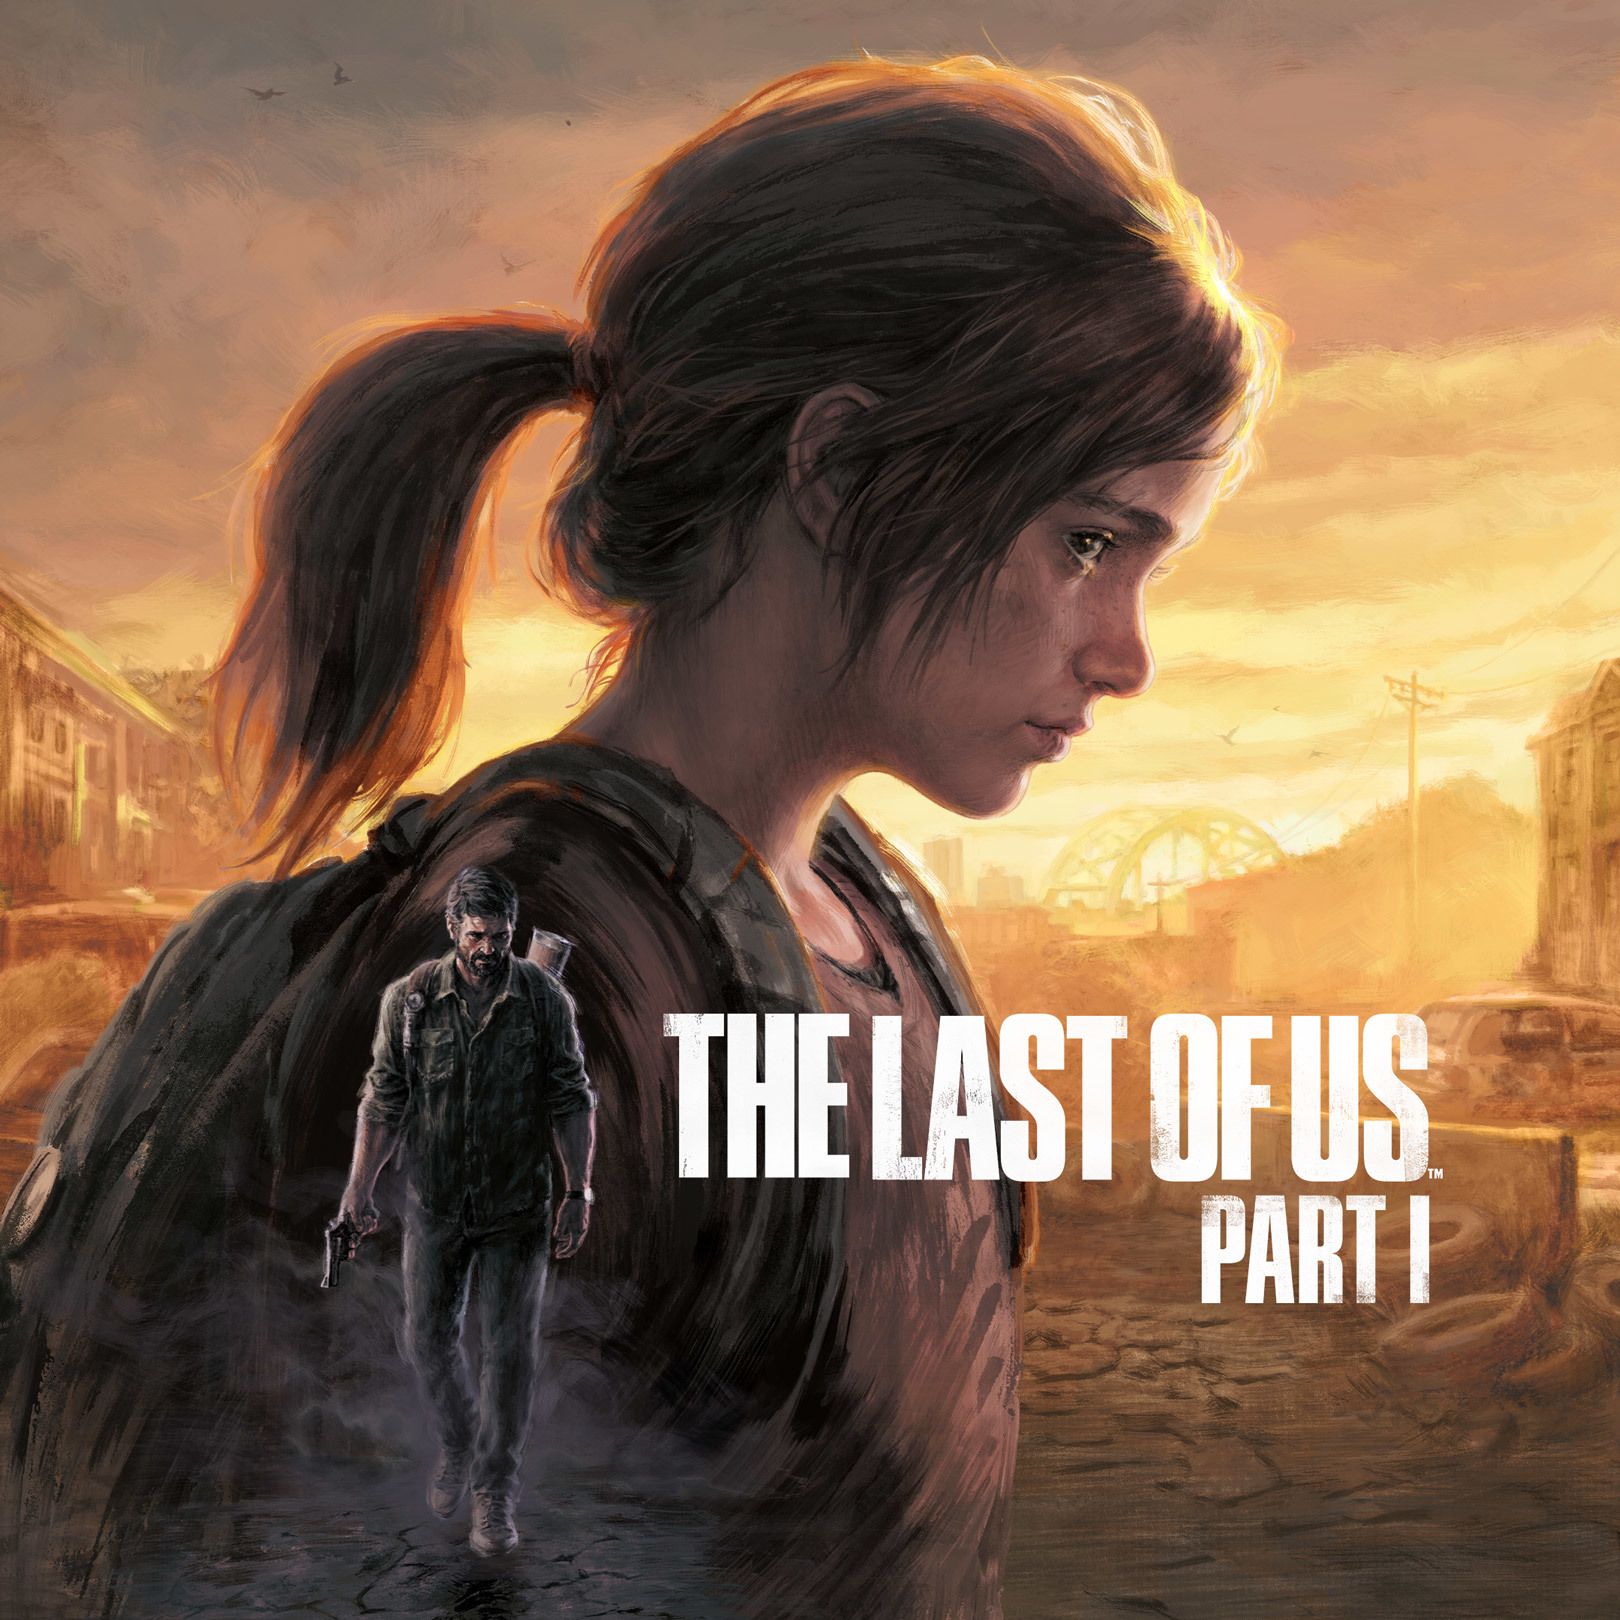  The Last Of Us Hintergrundbild 1620x1620. The Last of Us Part I. The Last of Us